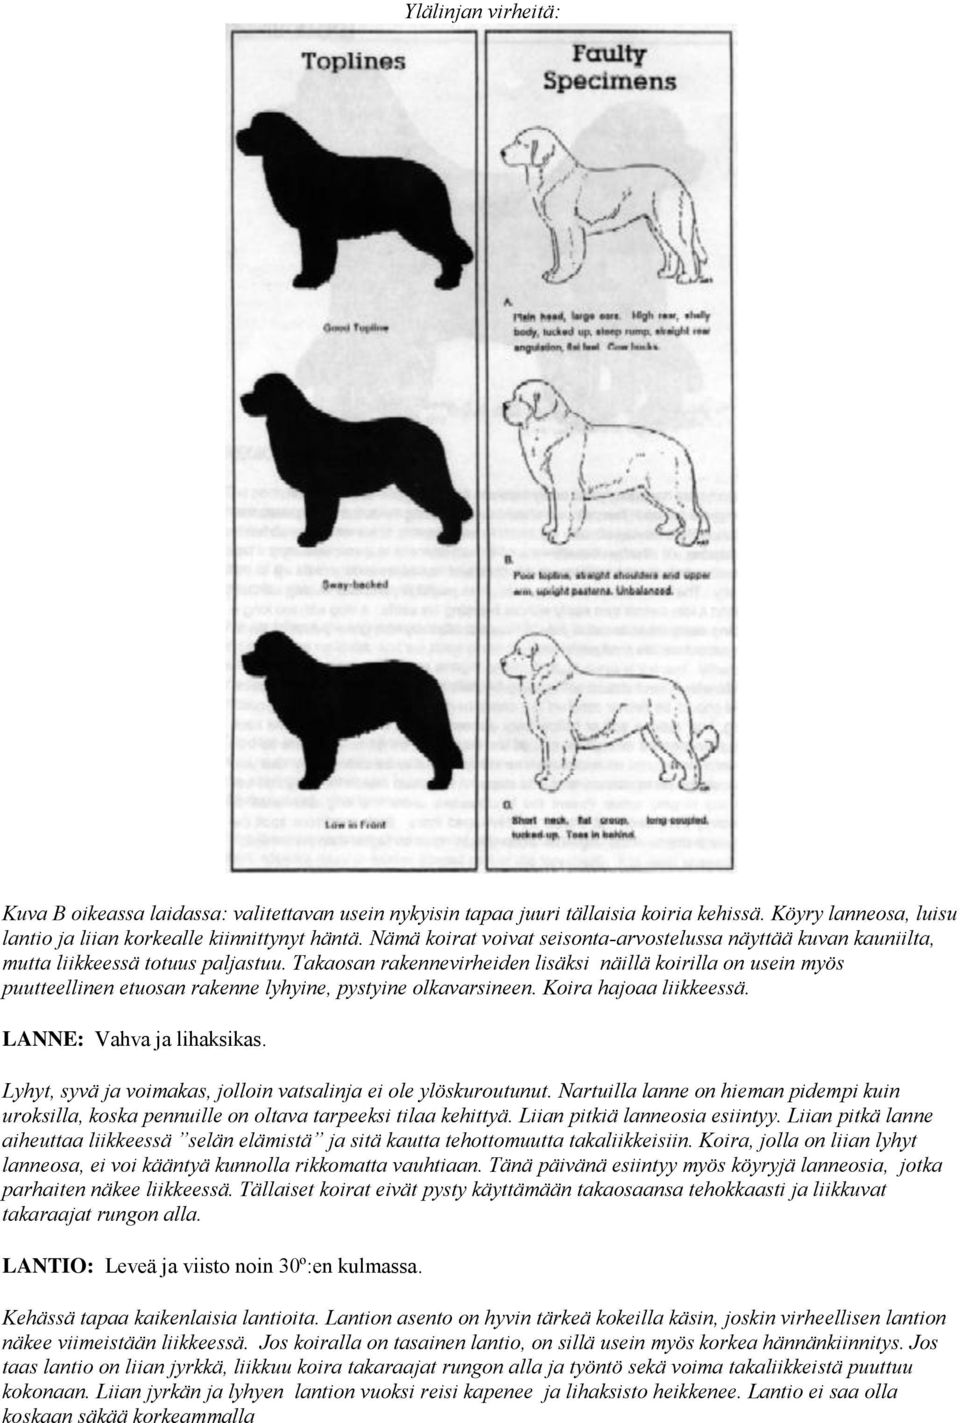 Takaosan rakennevirheiden lisäksi näillä koirilla on usein myös puutteellinen etuosan rakenne lyhyine, pystyine olkavarsineen. Koira hajoaa liikkeessä. LANNE: Vahva ja lihaksikas.